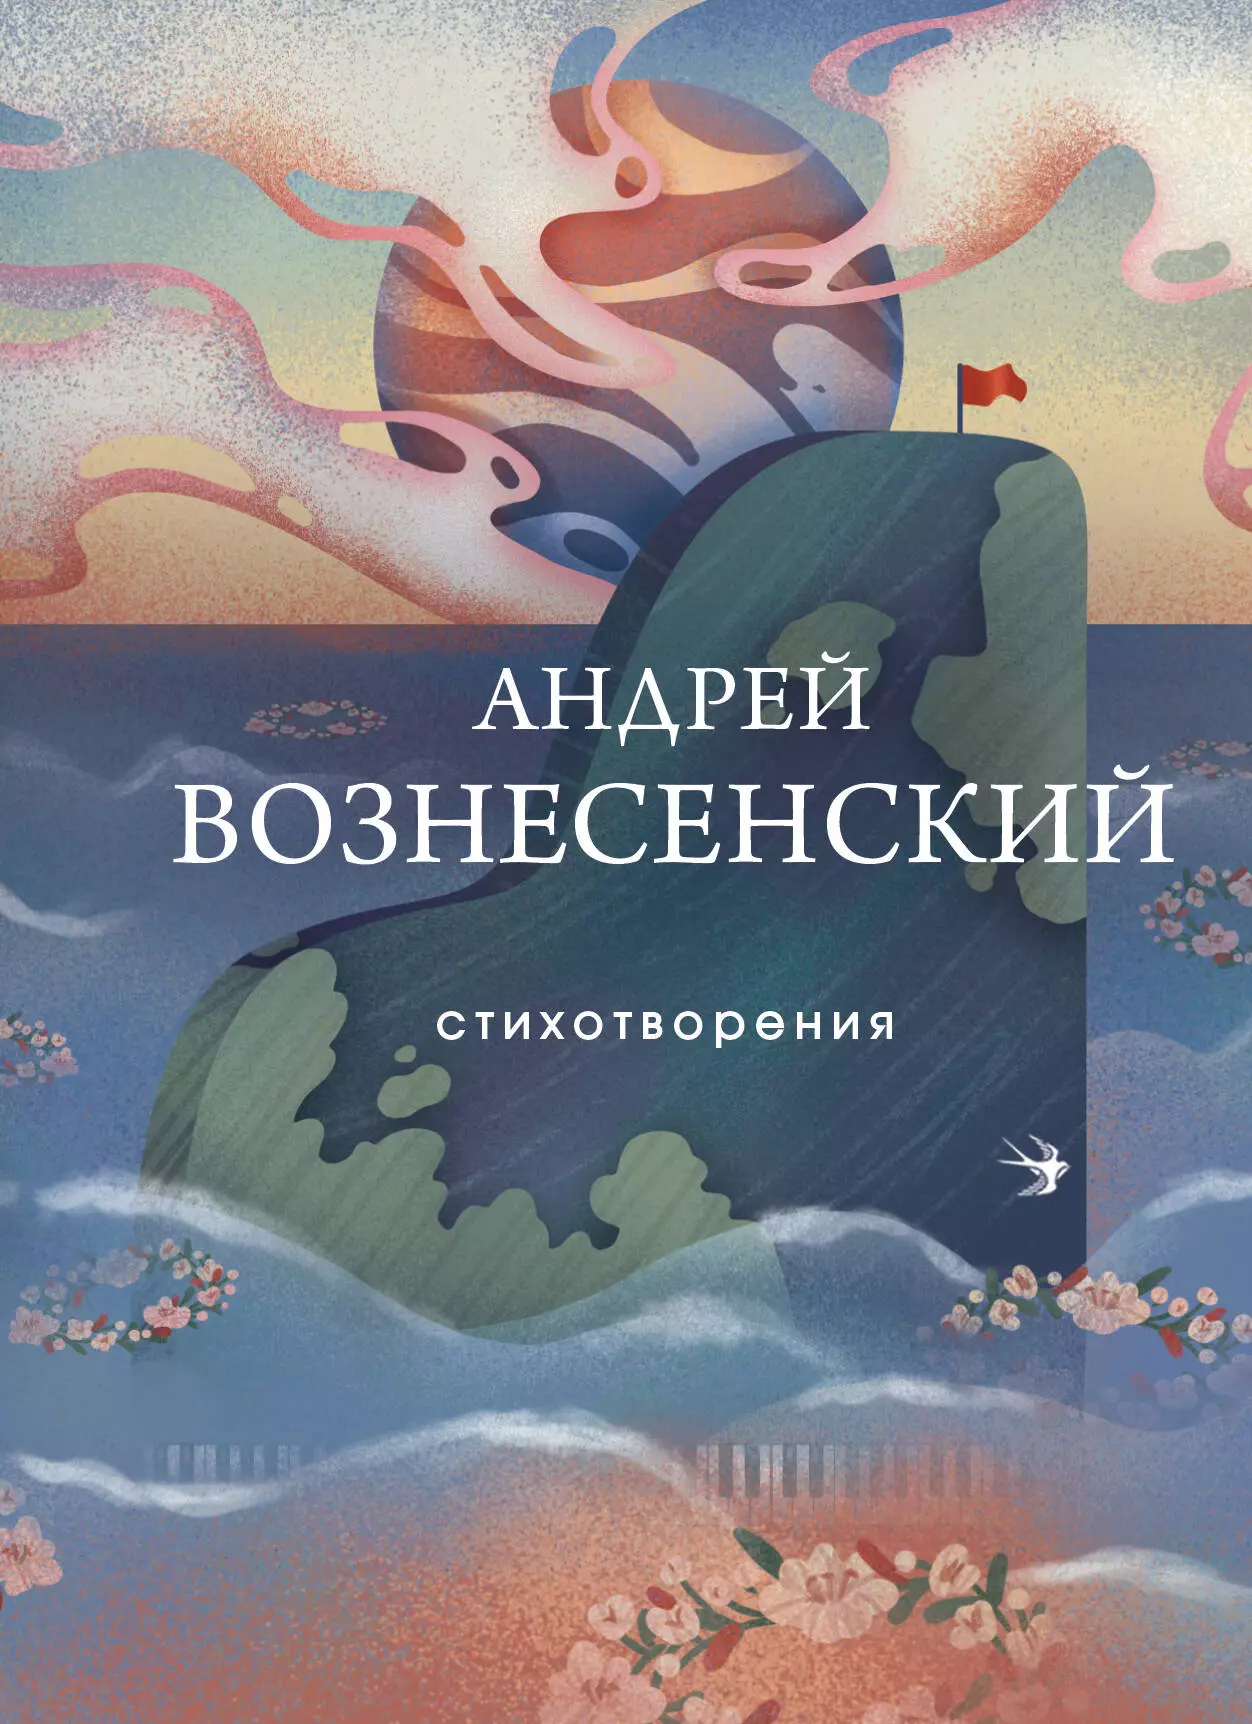 Вознесенский Андрей Андреевич - Стихотворения